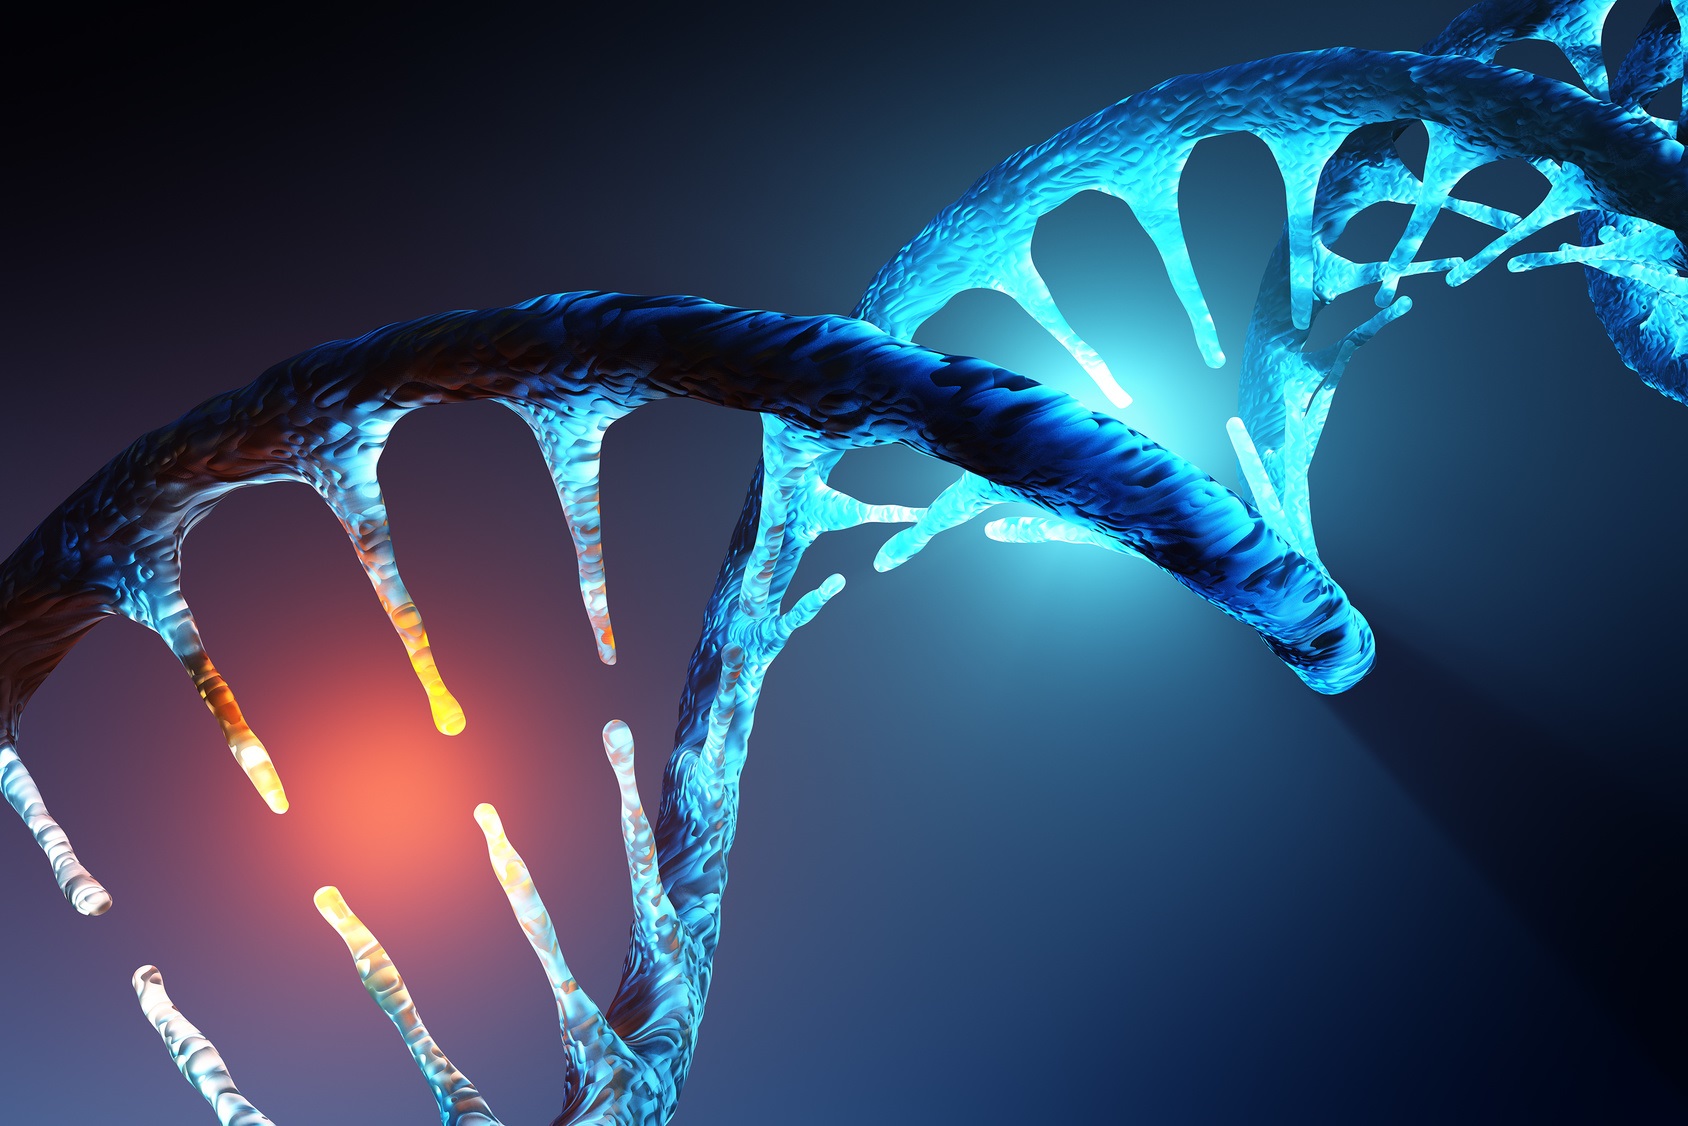 Nous connaissons l’ADN sous la forme d’une hélice double brin. Mais il présente parfois d’autres structures. Une nouvelle forme a ainsi été découverte dans des cellules humaines. © JohanSwanepoel, Fotolia